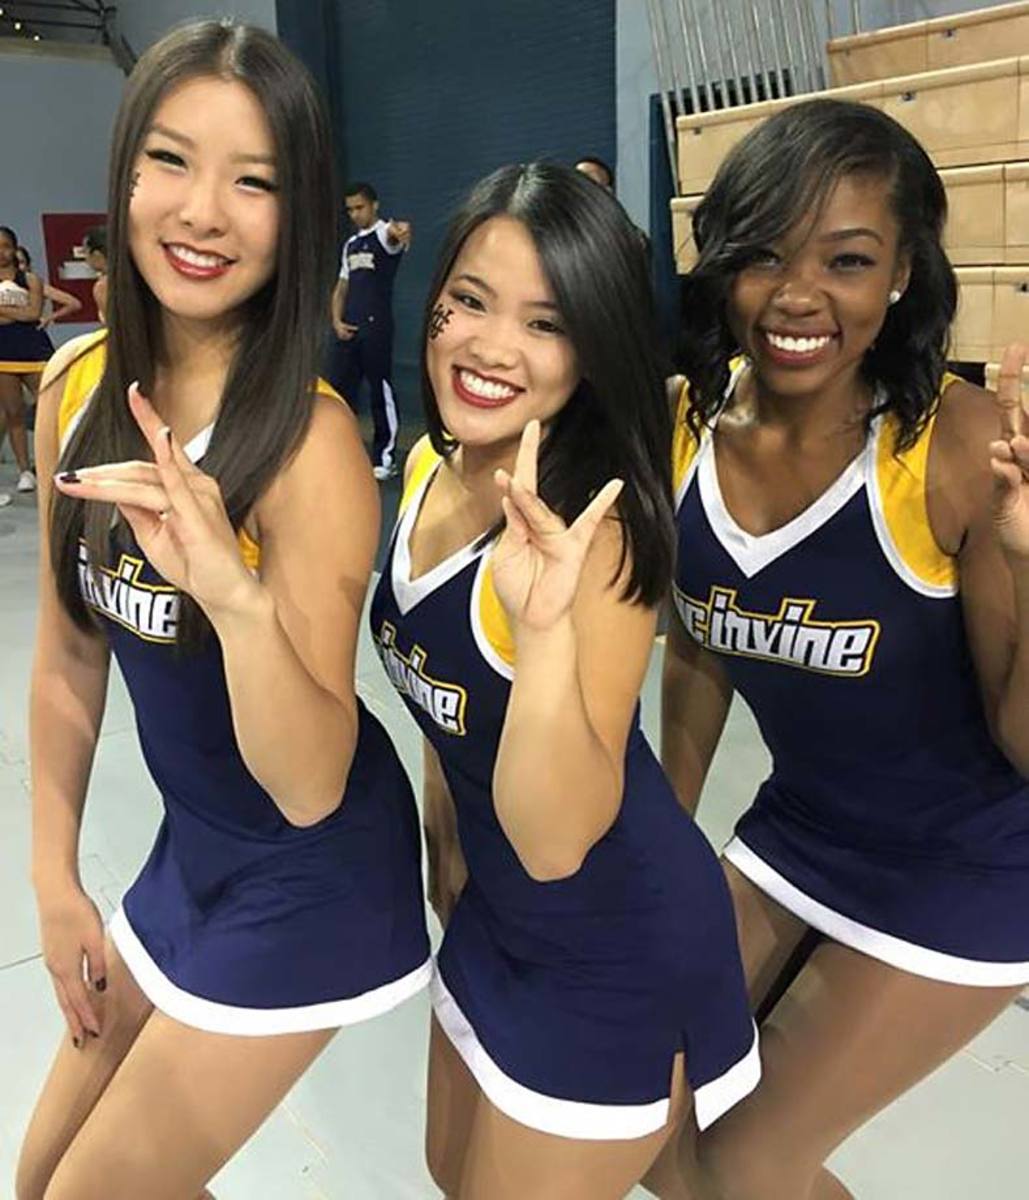 UC-Irvine-cheerleaders.jpg